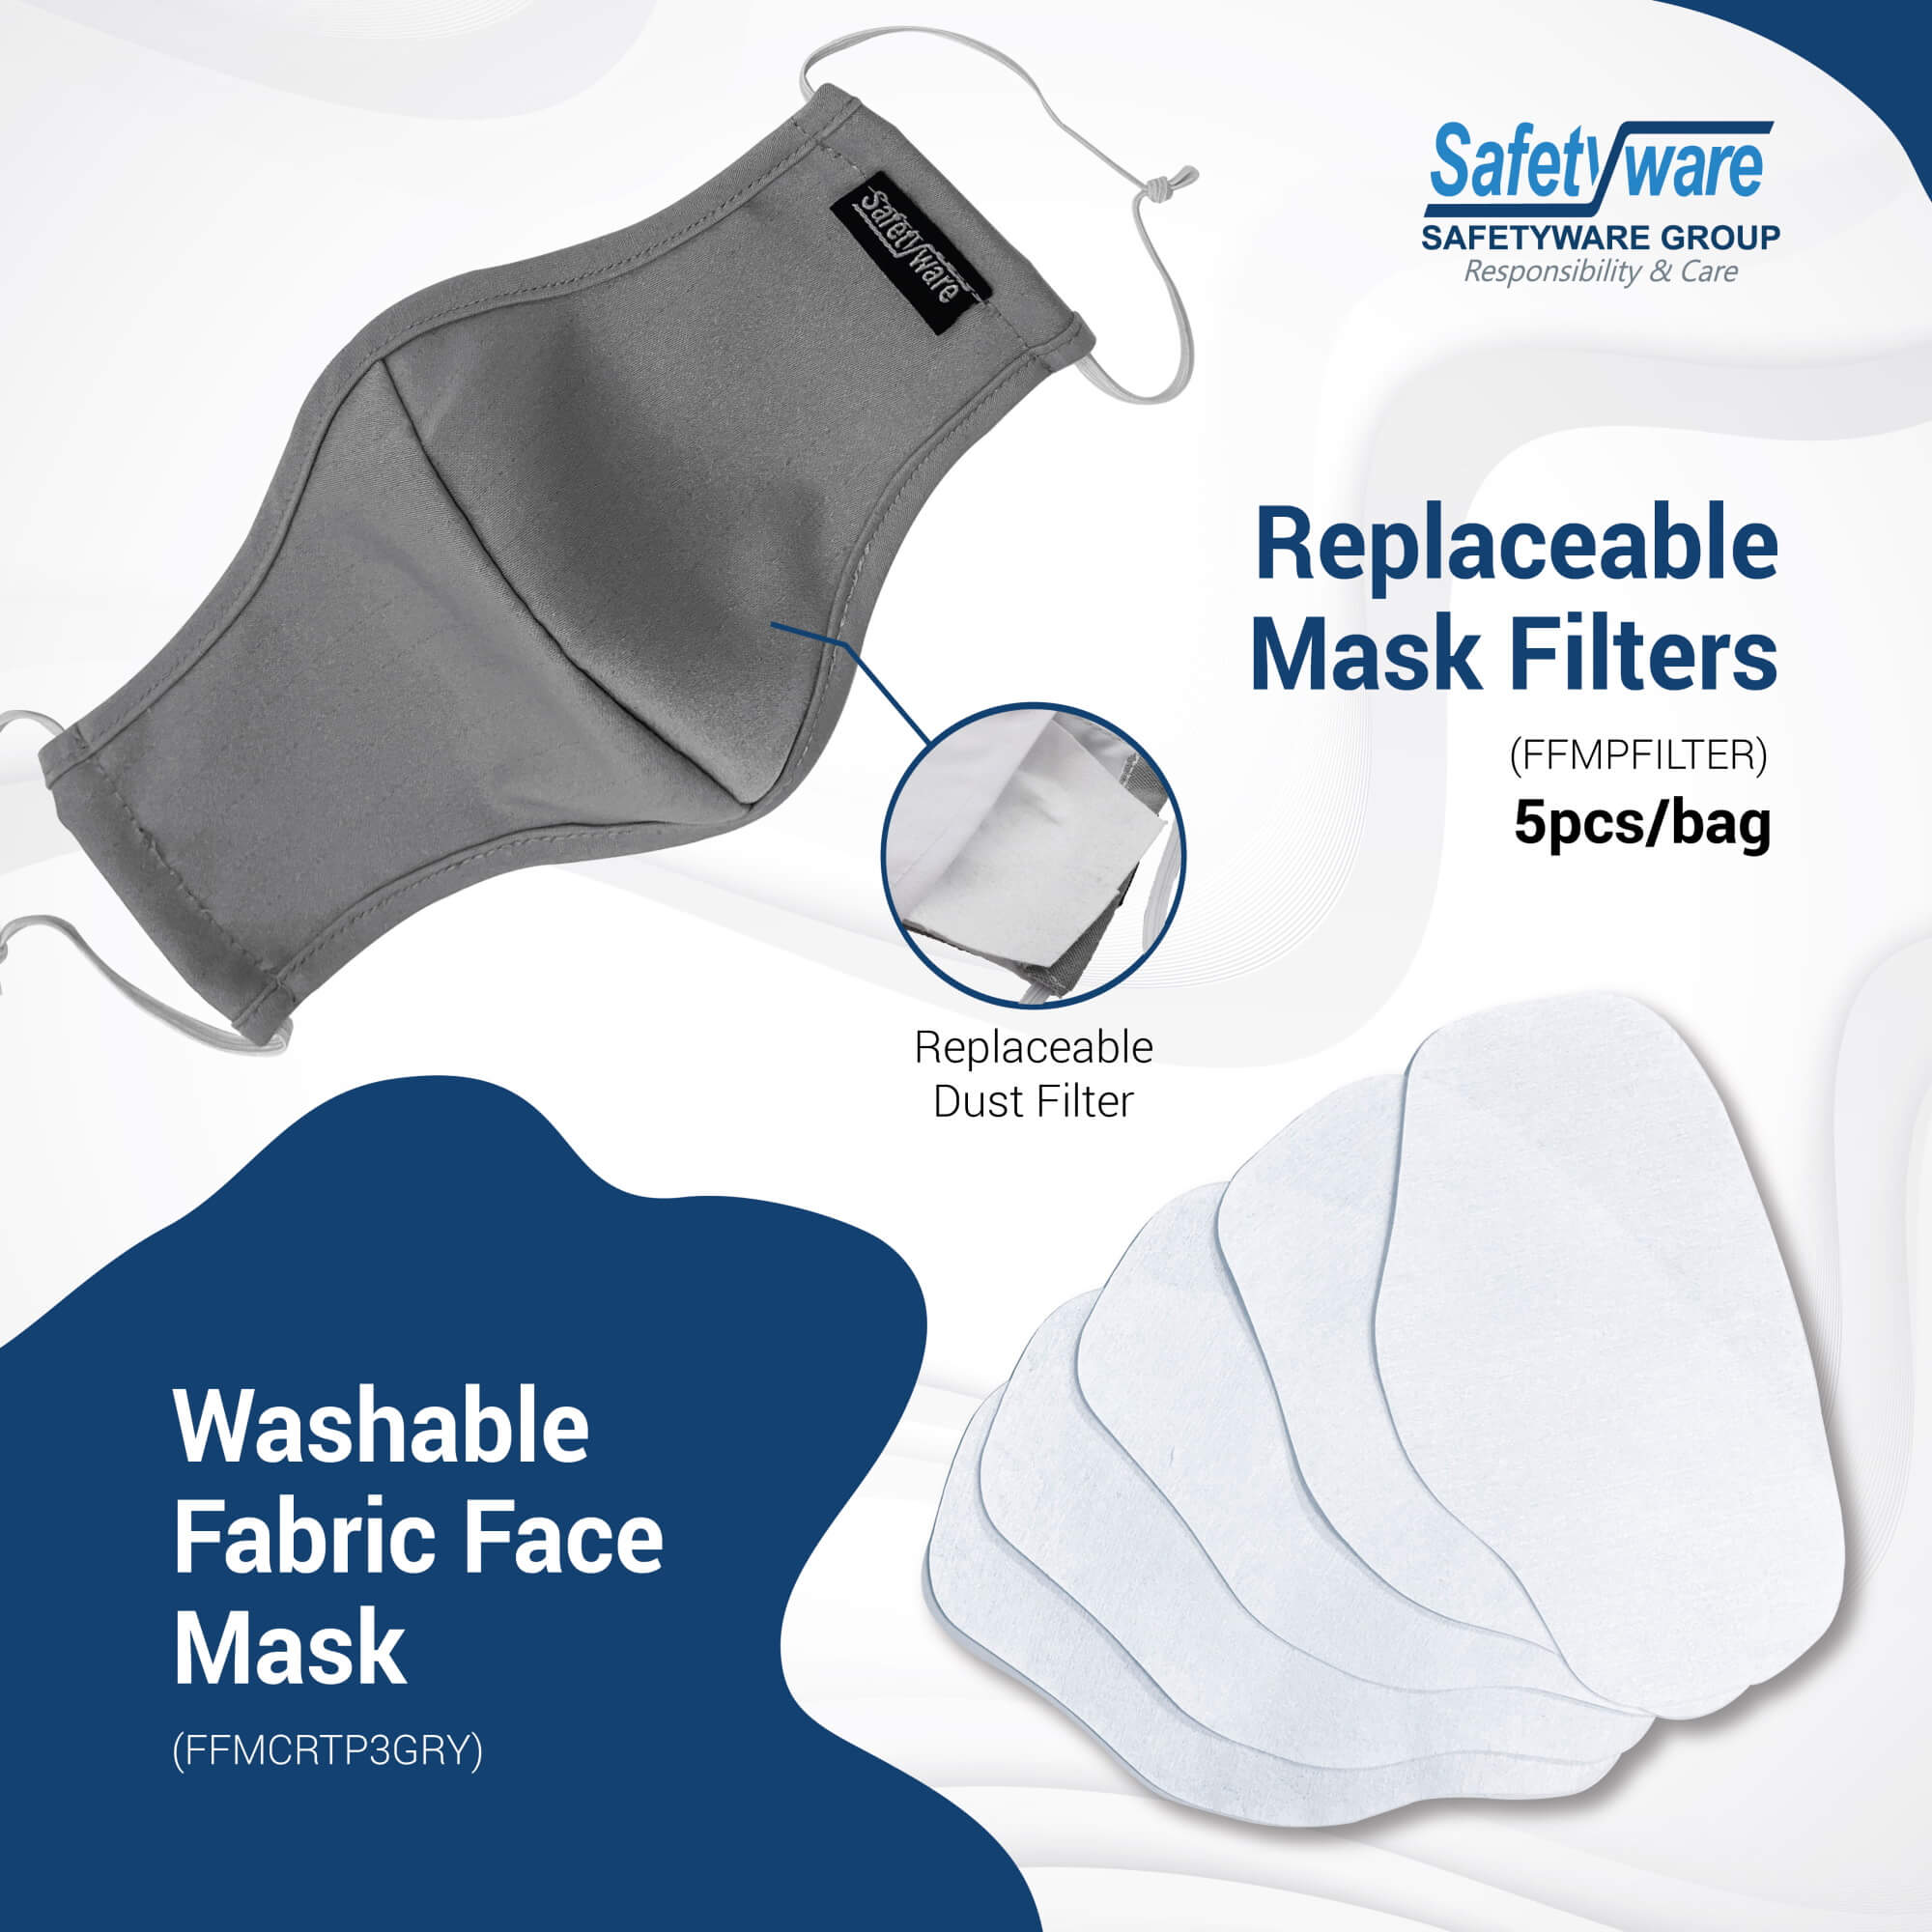 Washable Fabric Face Mask Promotion